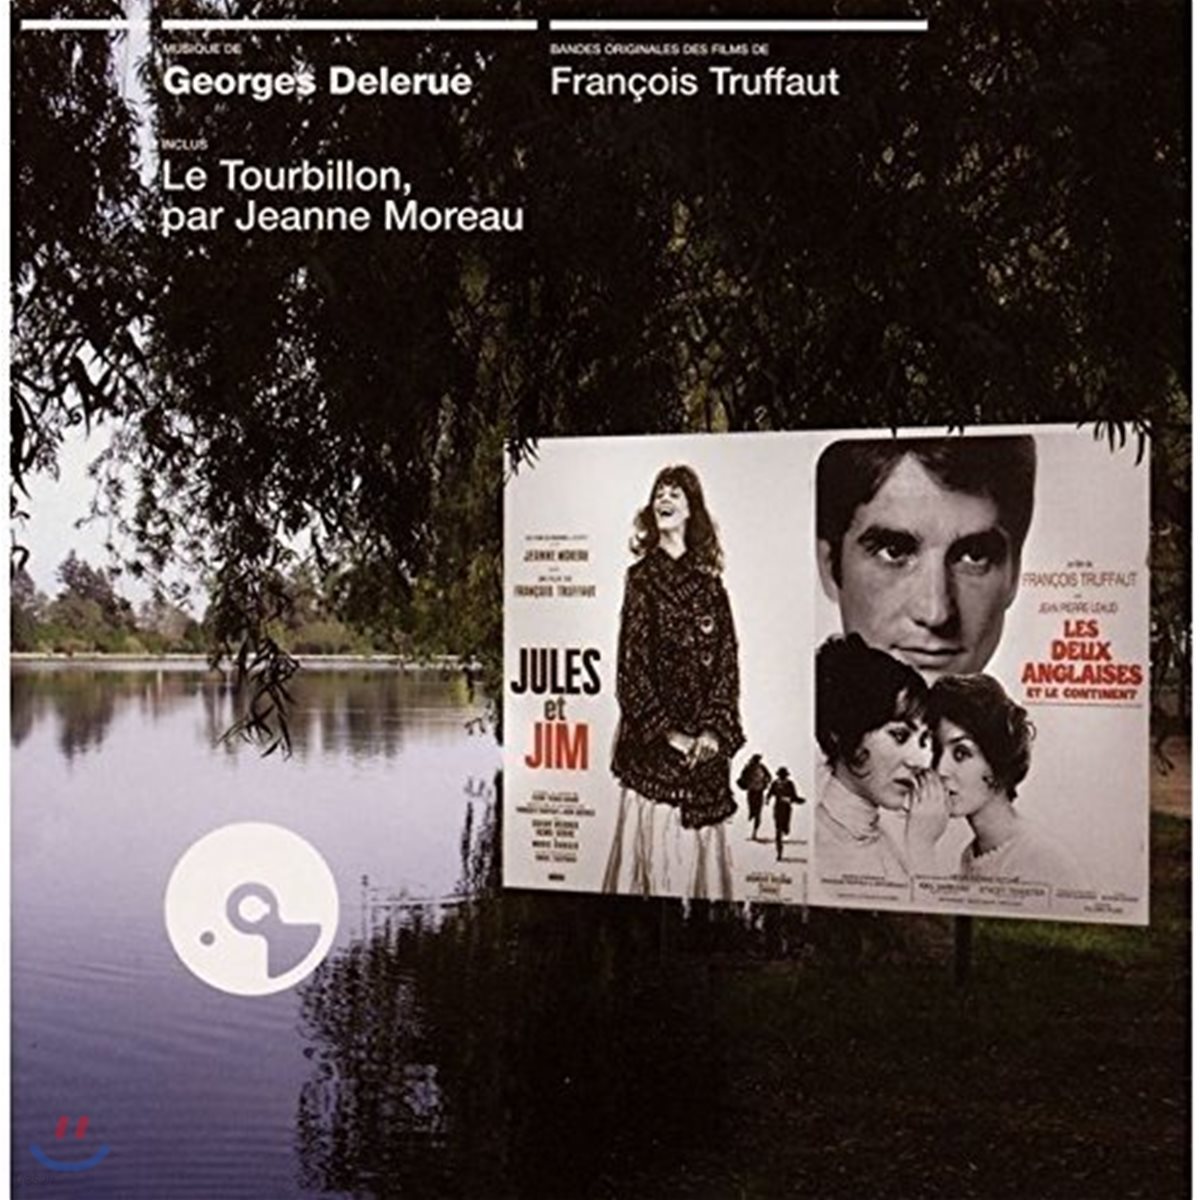 쥴 앤 짐 / 두 명의 영국 여인과 유럽 대륙 영화음악 (Jules et Jim / Les Deux Anglaises et Le Continent OST by Georges Delerue 조르주 들르뤼)